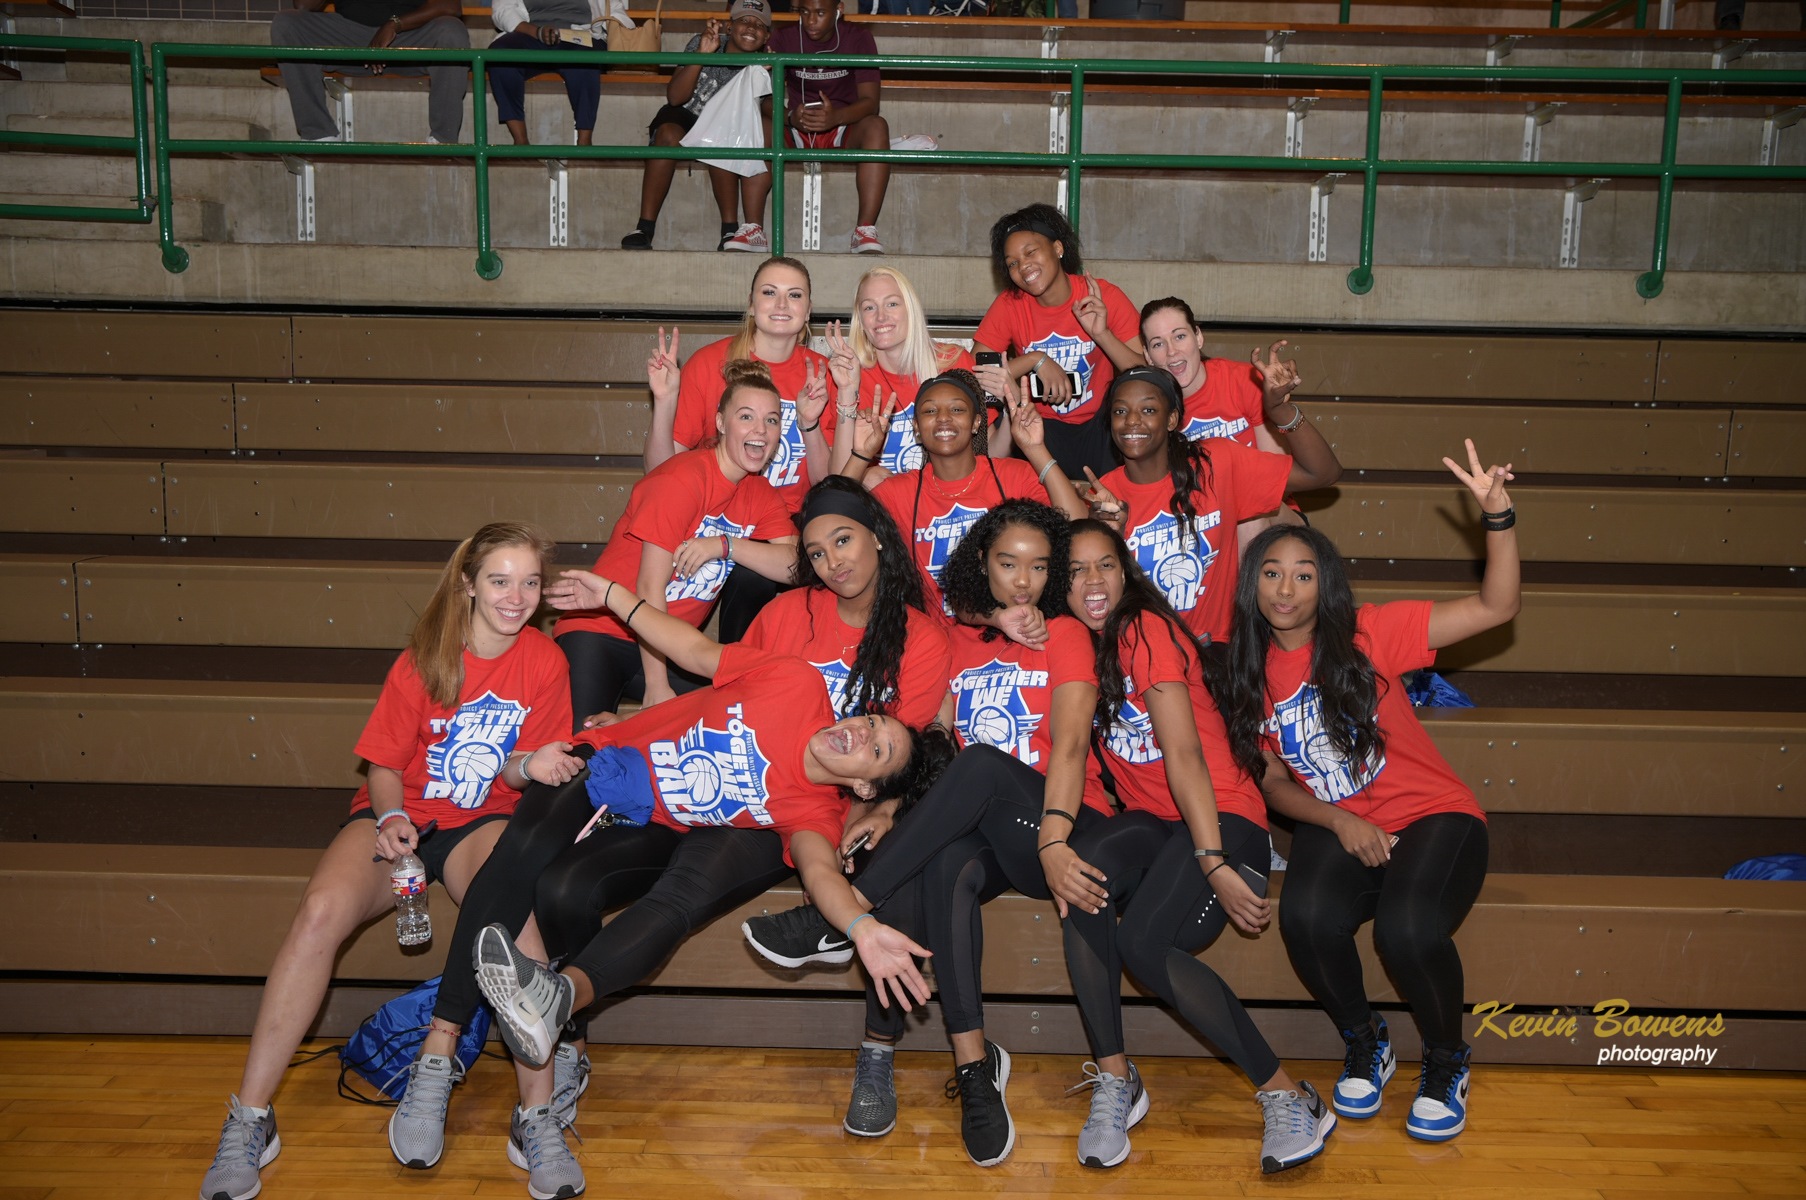 SMU Mustangs women's basketball team